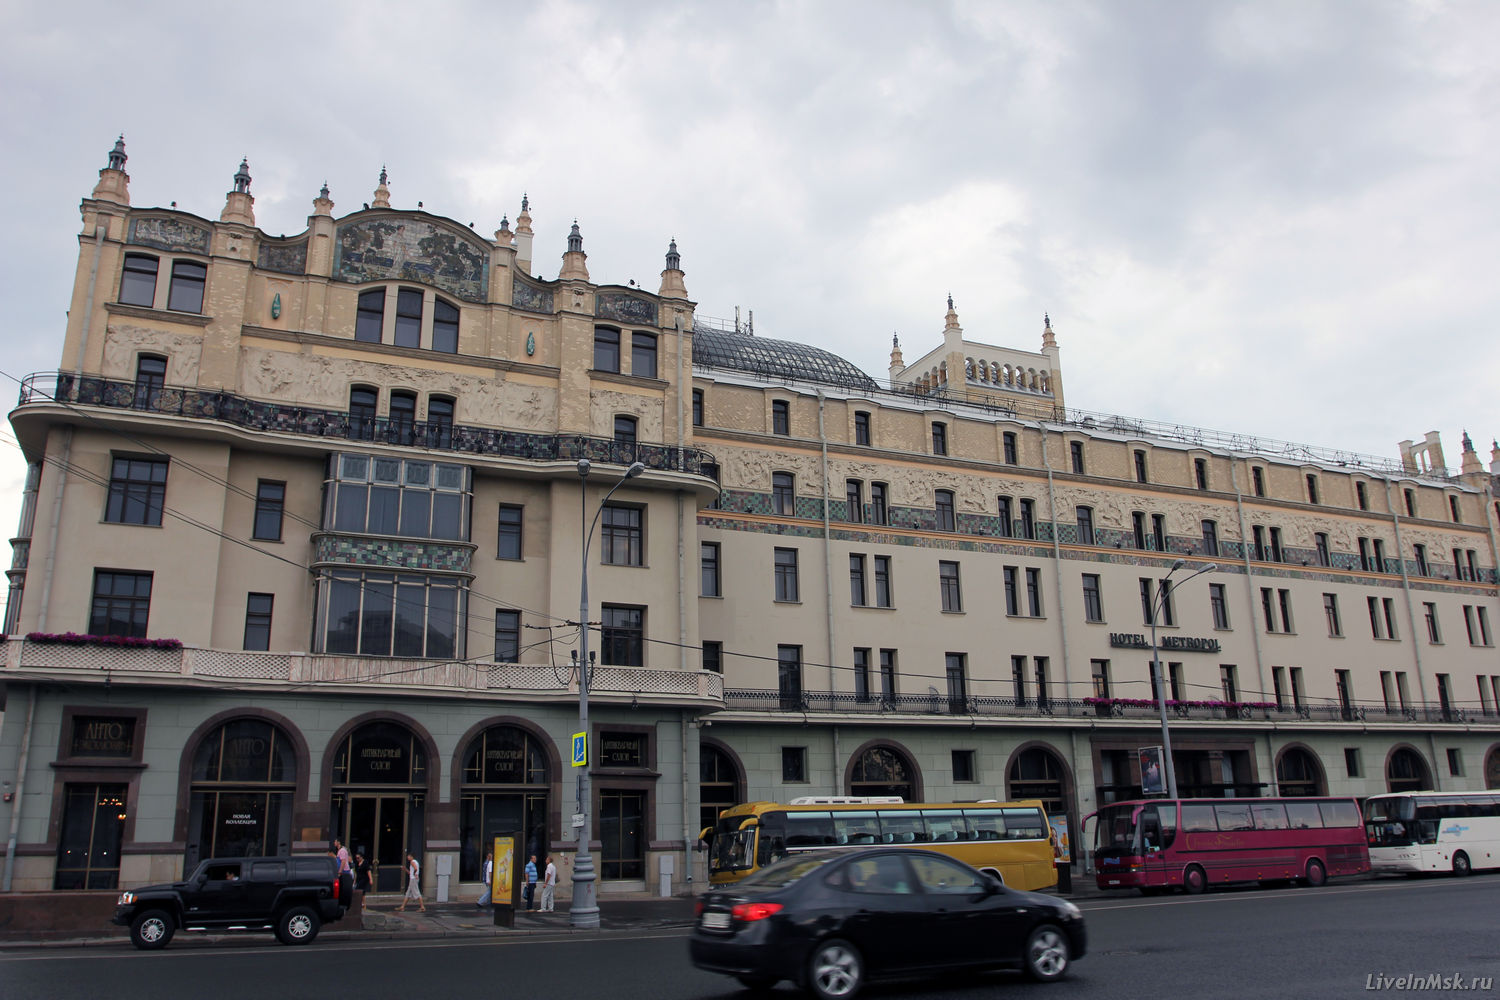 Гостиница «Метрополь», фото 2015